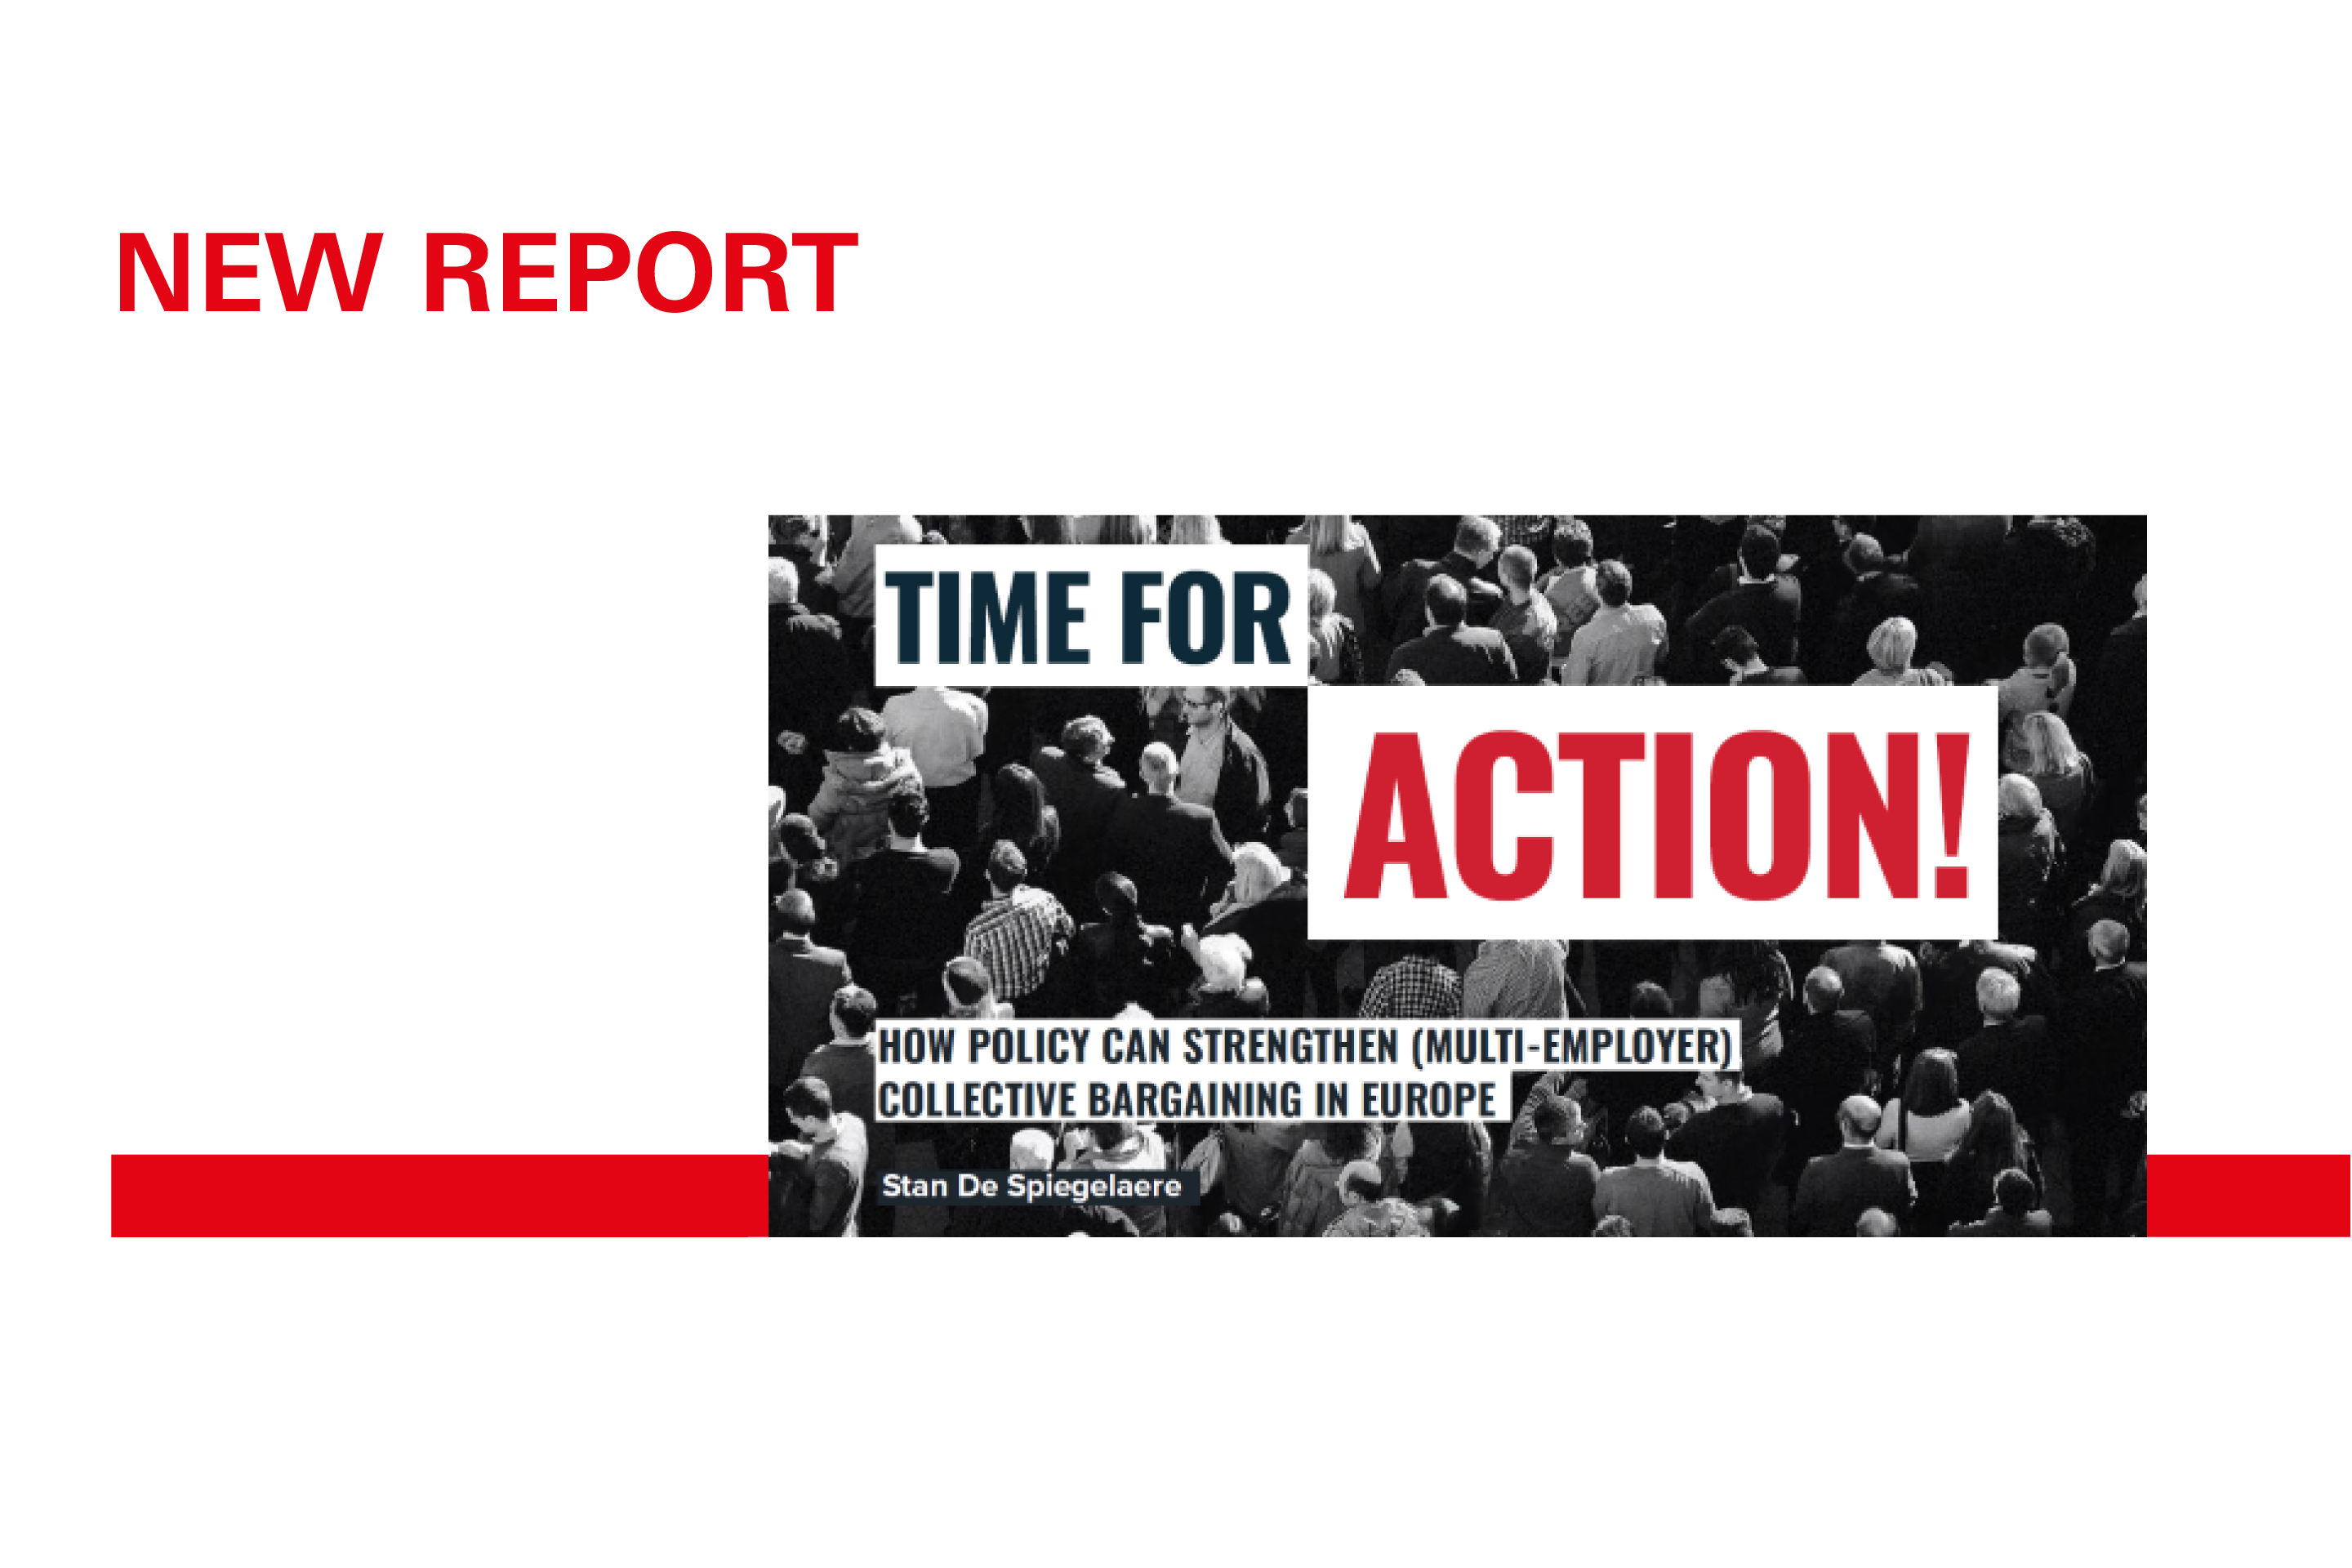 Das cover des Buches Time for Action zeigt eine Demonstration mit vielen Menschen